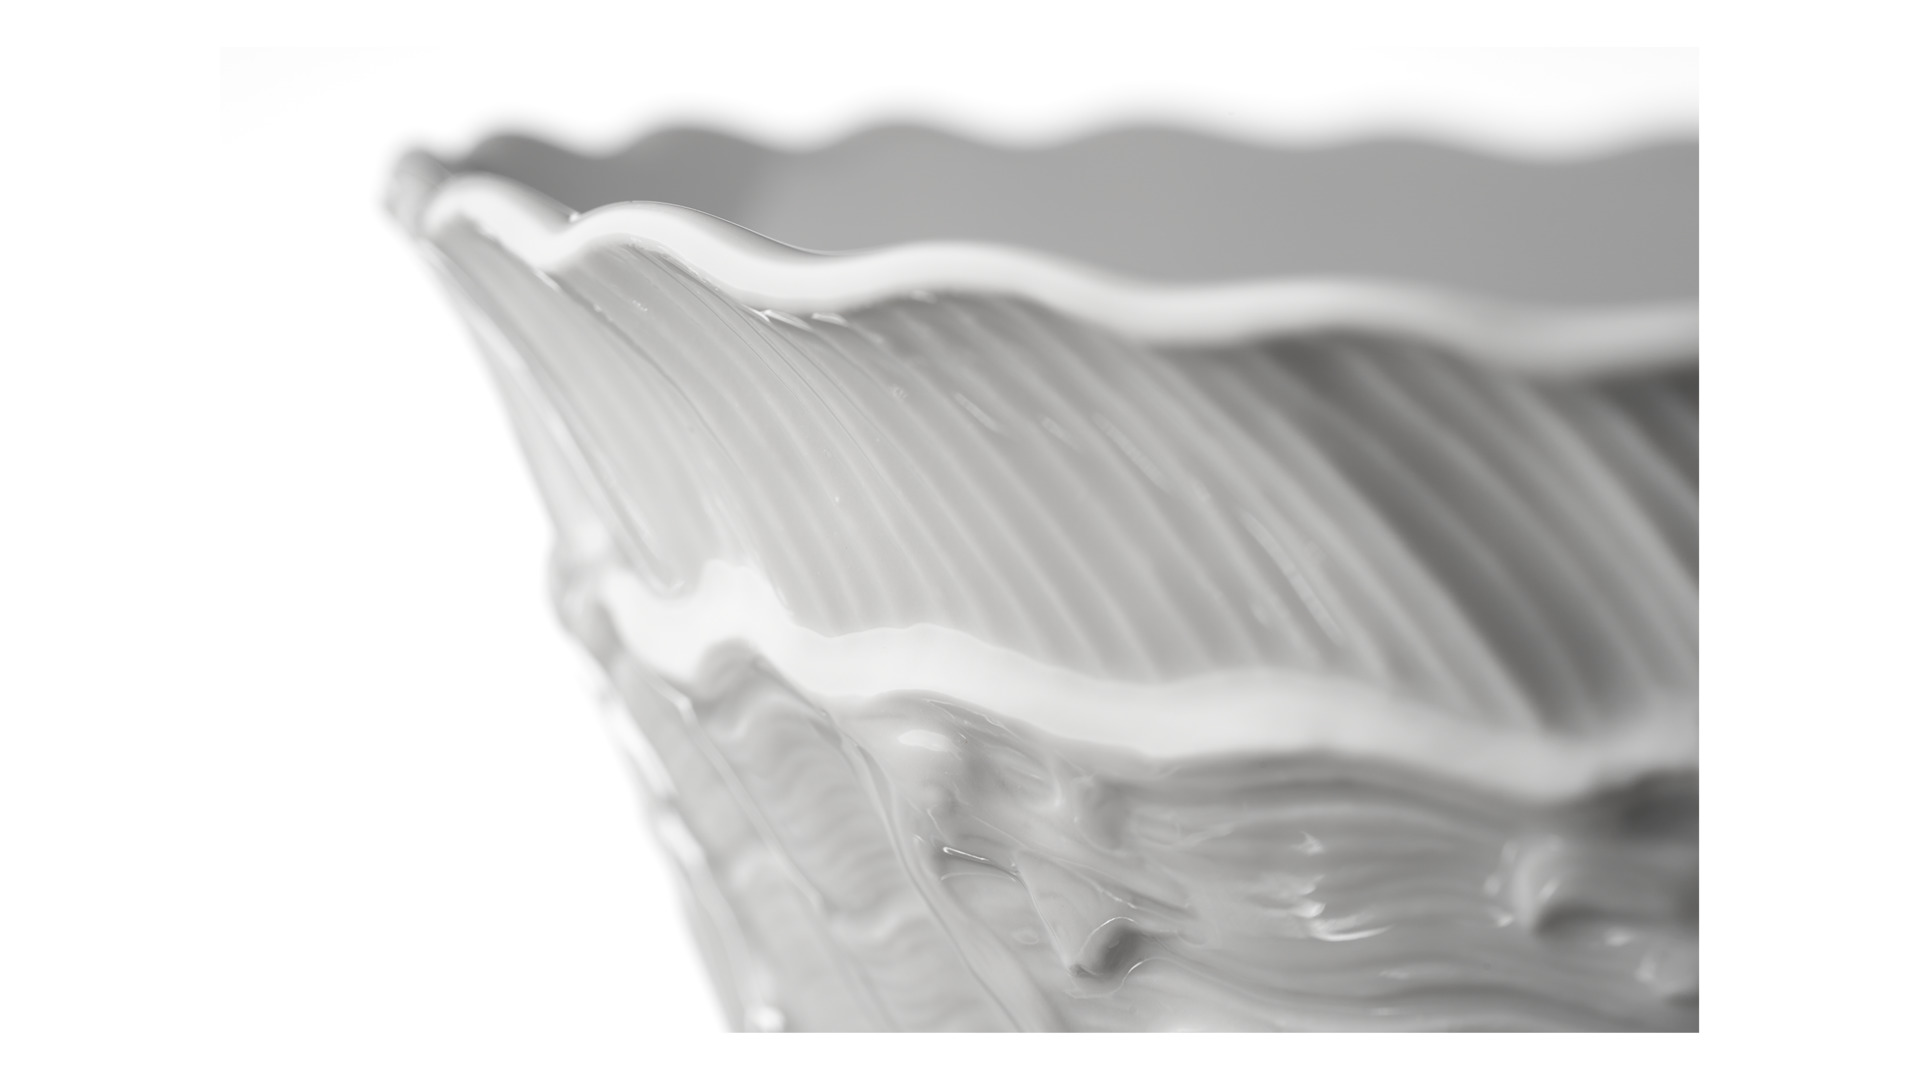 Салатник круглый Meissen Лебединый сервиз 18 см, белый рельеф, фарфор